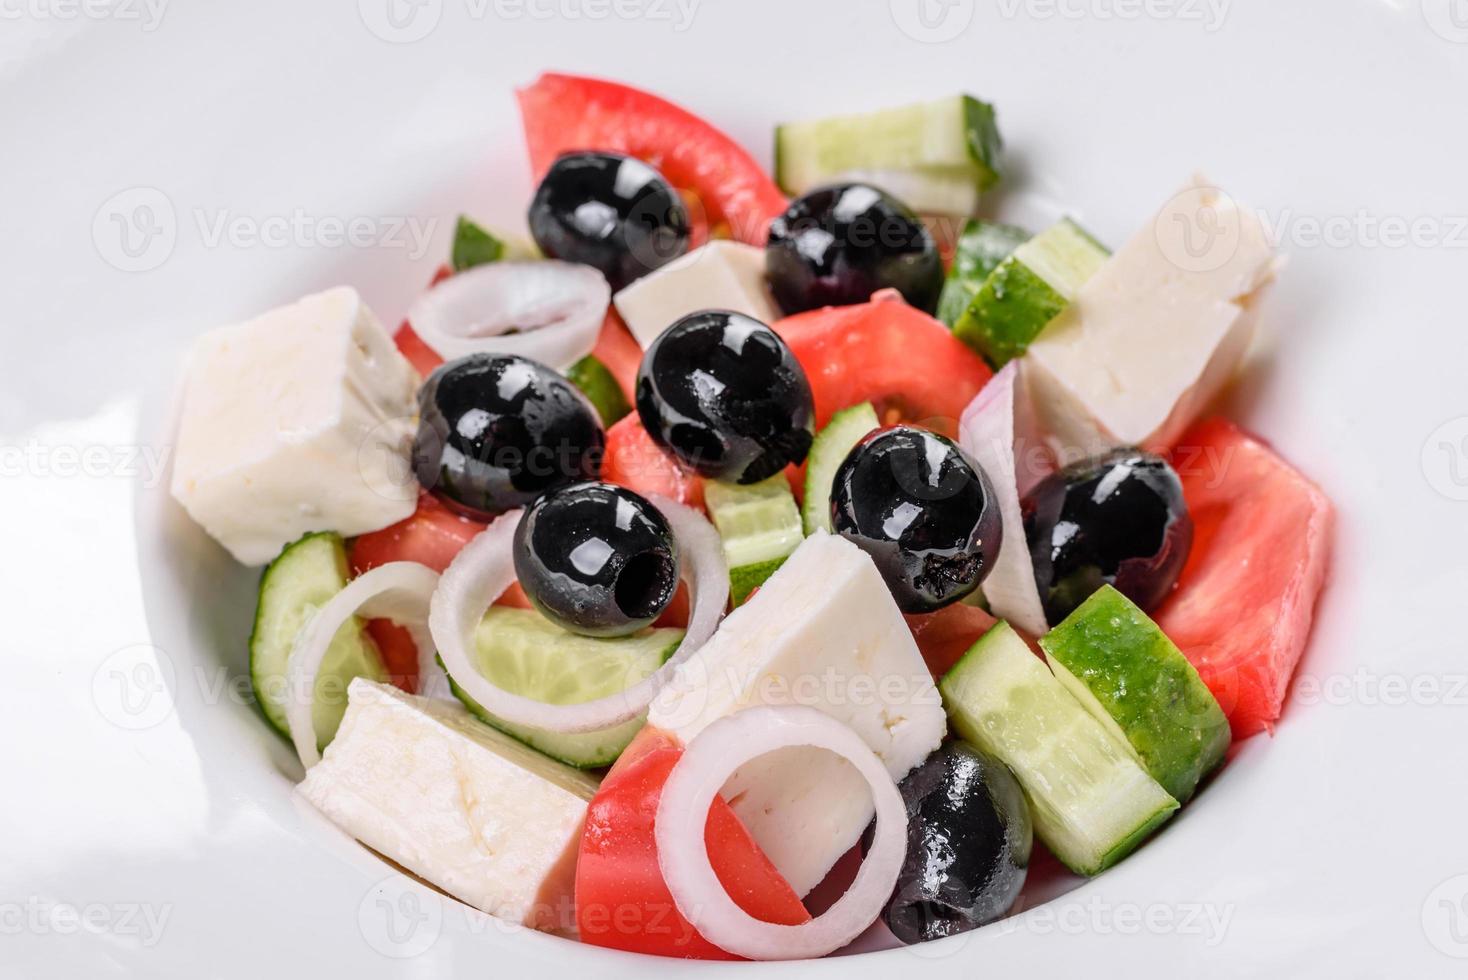 frischer leckerer griechischer Salat mit Tomaten, Gurken, Zwiebeln und Oliven mit Olivenöl foto